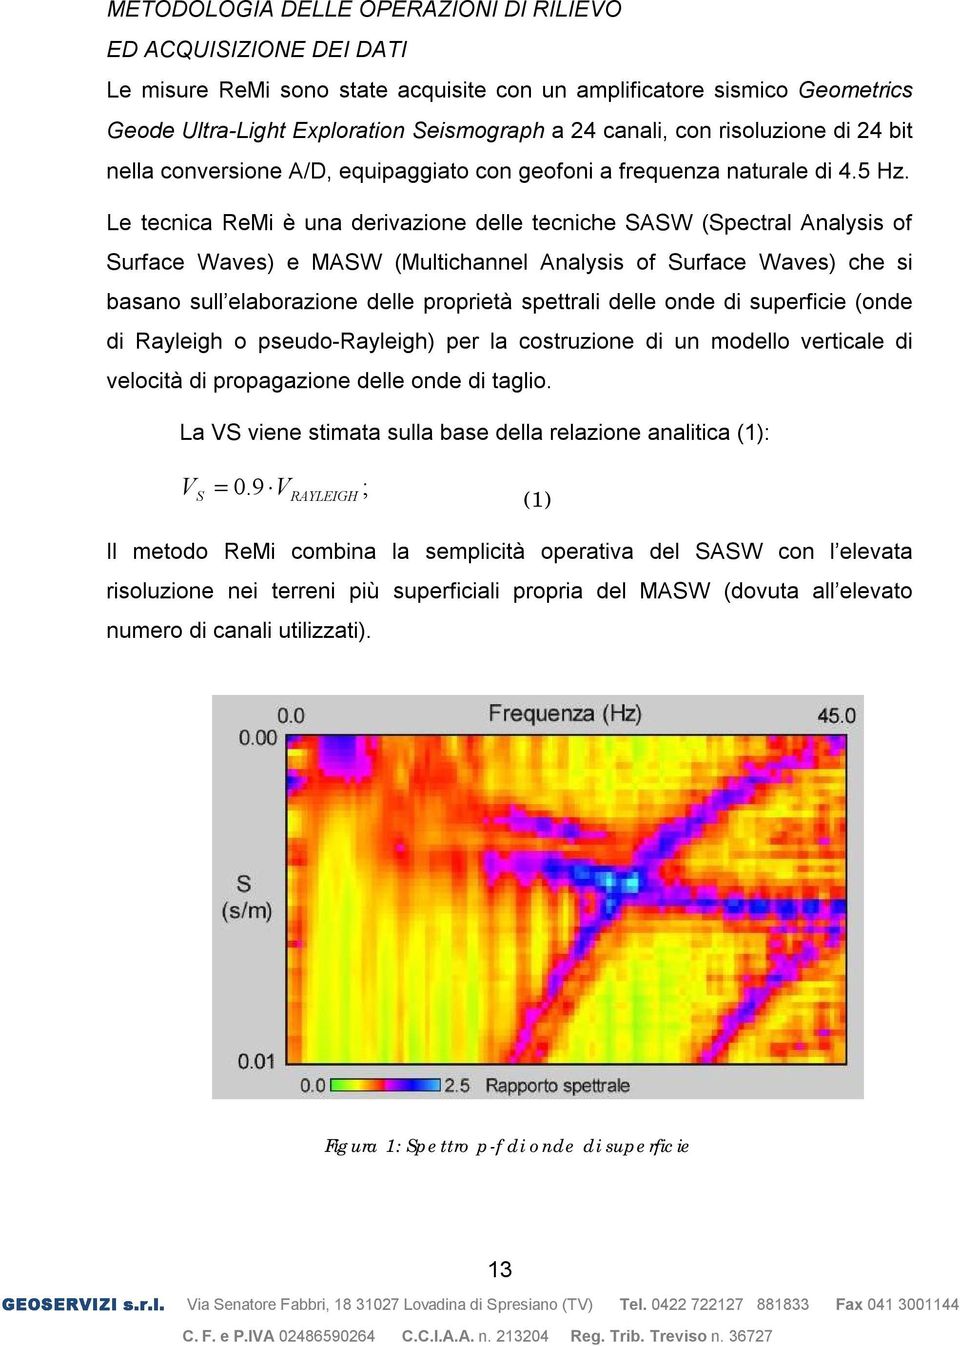 Le tecnica ReMi è una derivazione delle tecniche SASW (Spectral Analysis of Surface Waves) e MASW (Multichannel Analysis of Surface Waves) che si basano sull elaborazione delle proprietà spettrali